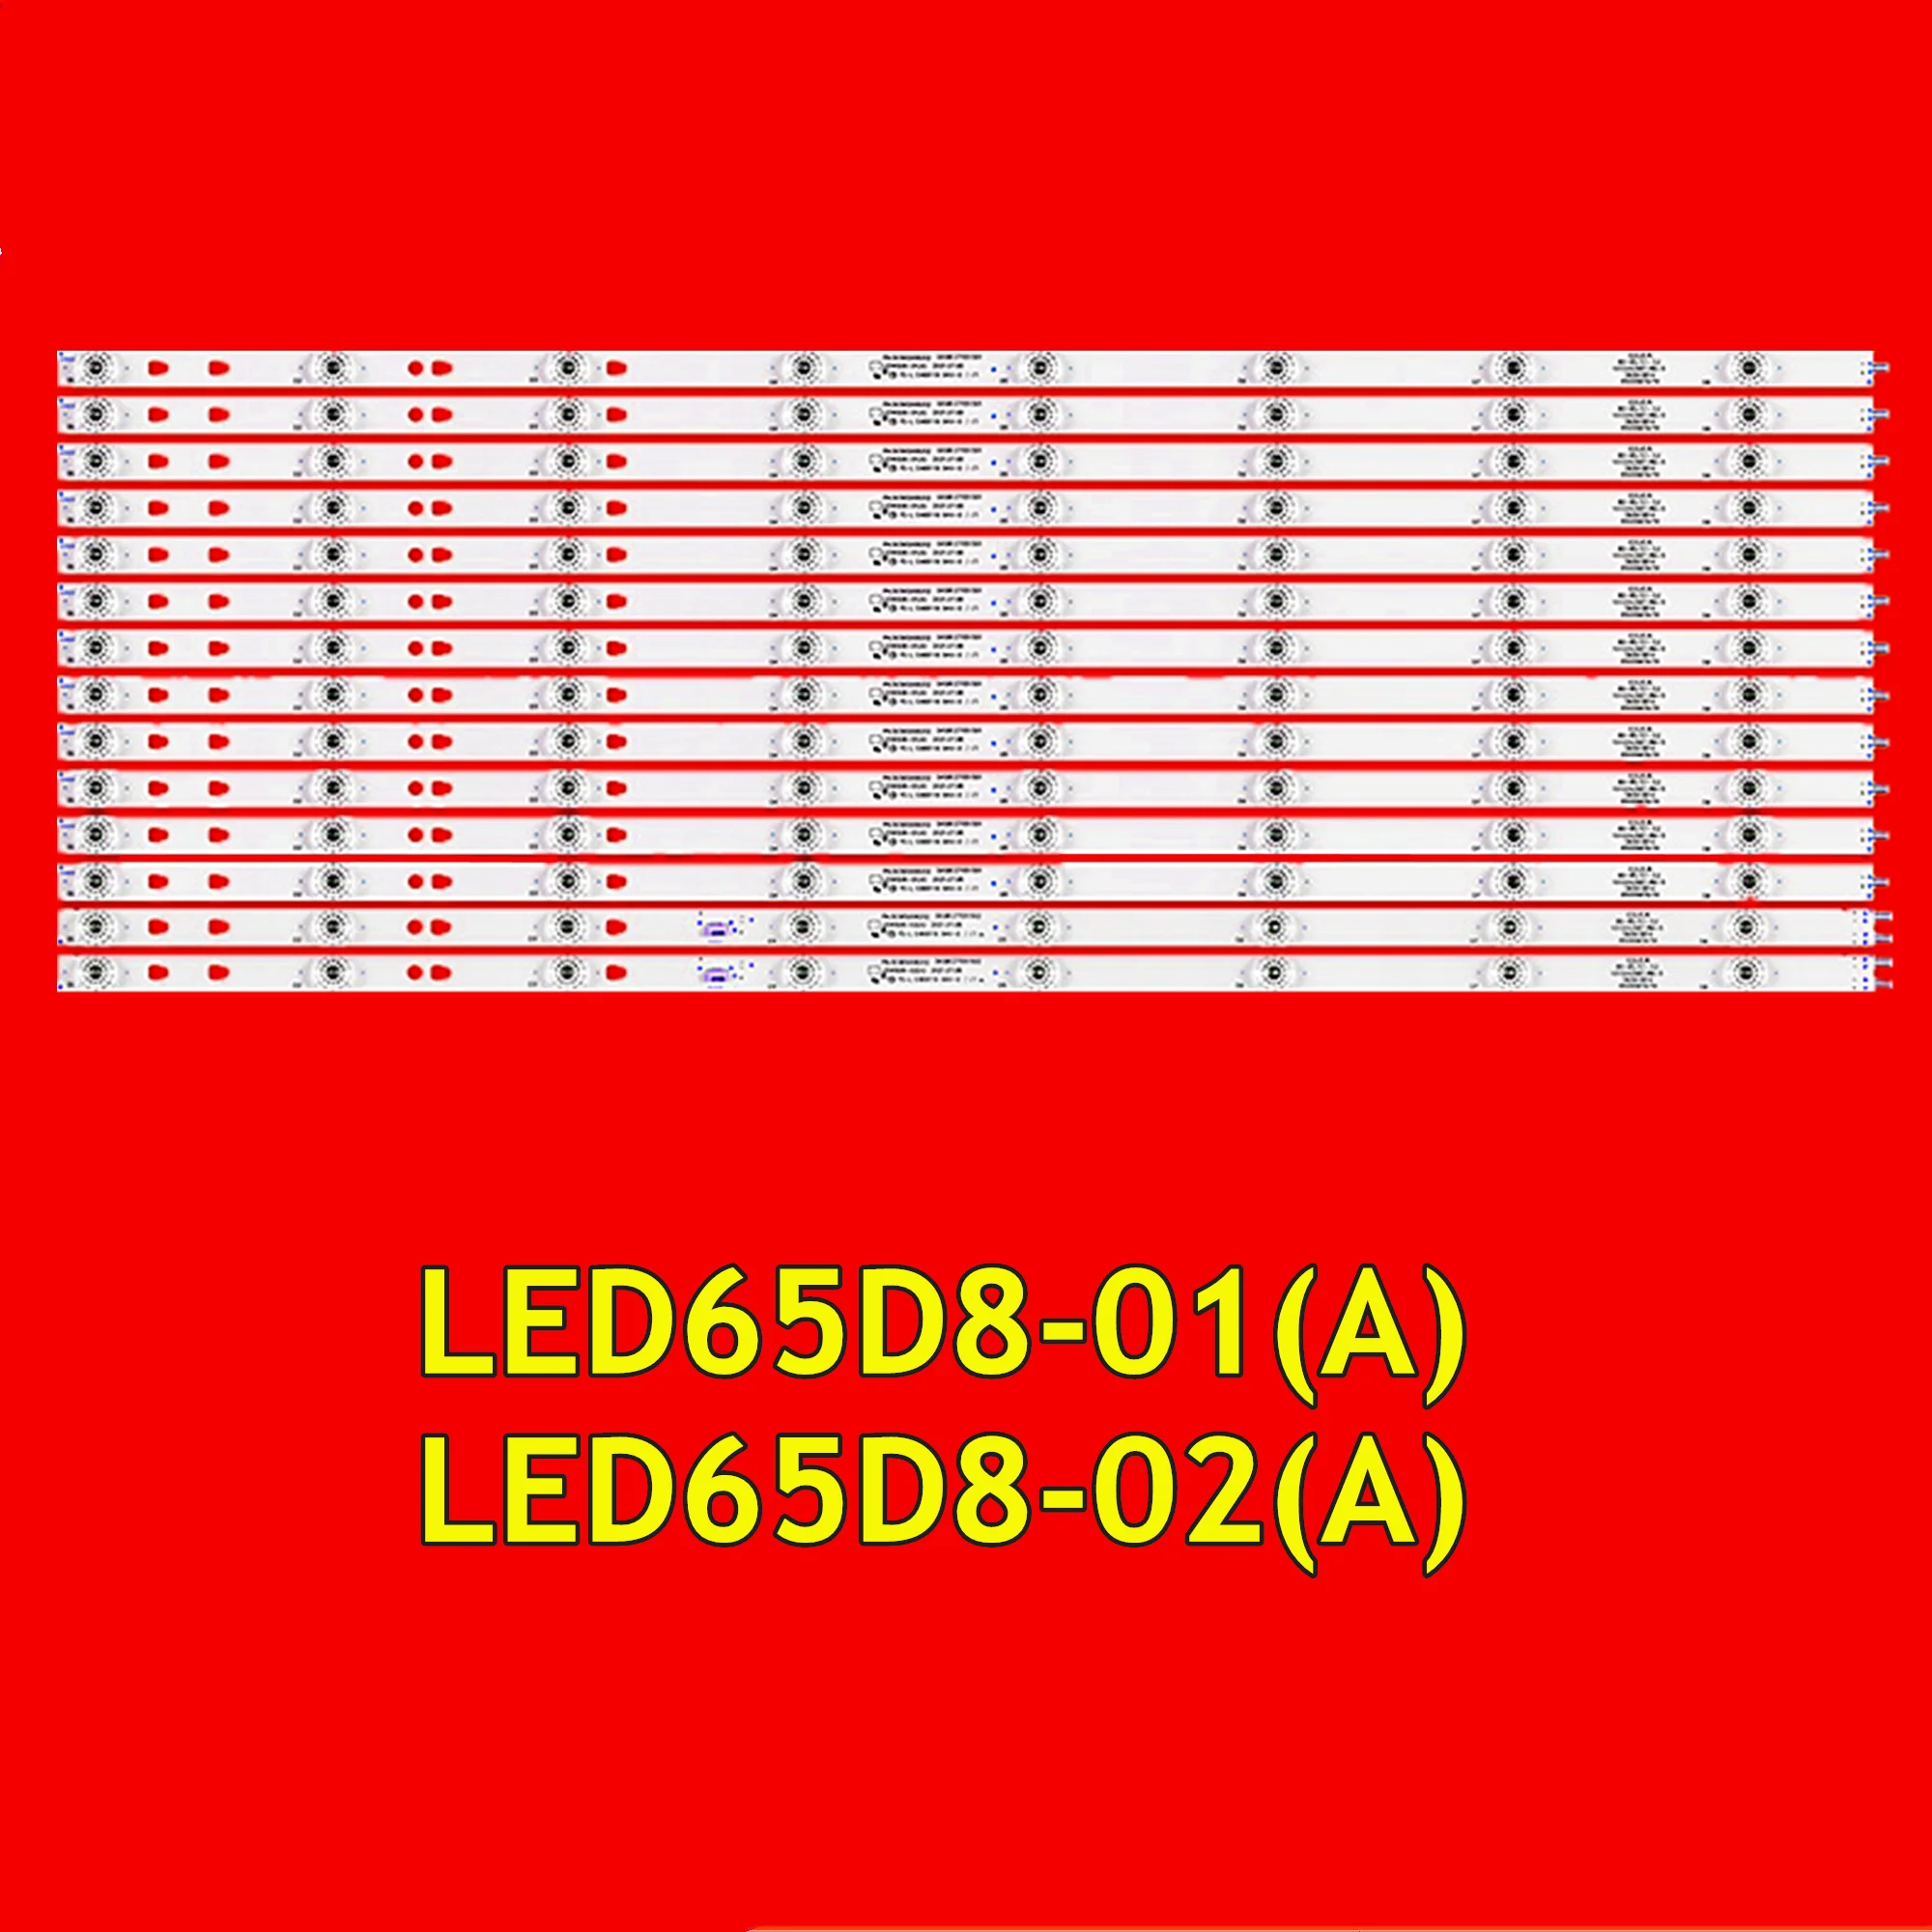 LED TV Ʈ Ʈ, LQ65H31G, LQ65H31, LSC650FN05, 30365008202 LED65D8-01(A), LED65D8-02(A), 16 